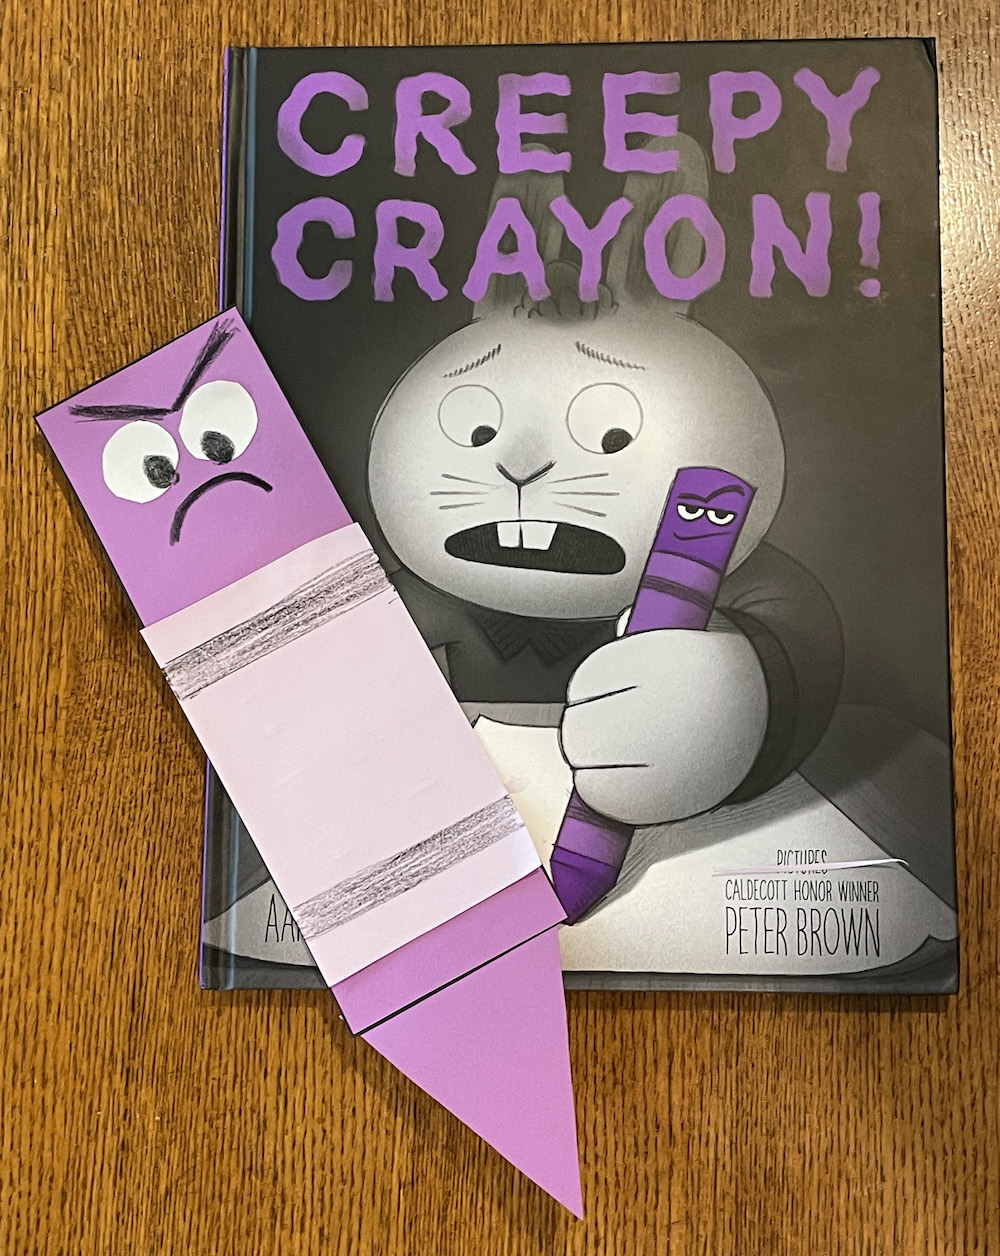 Crayon Rocks Set (32 Colors) For Kids - Happy Little Tadpole